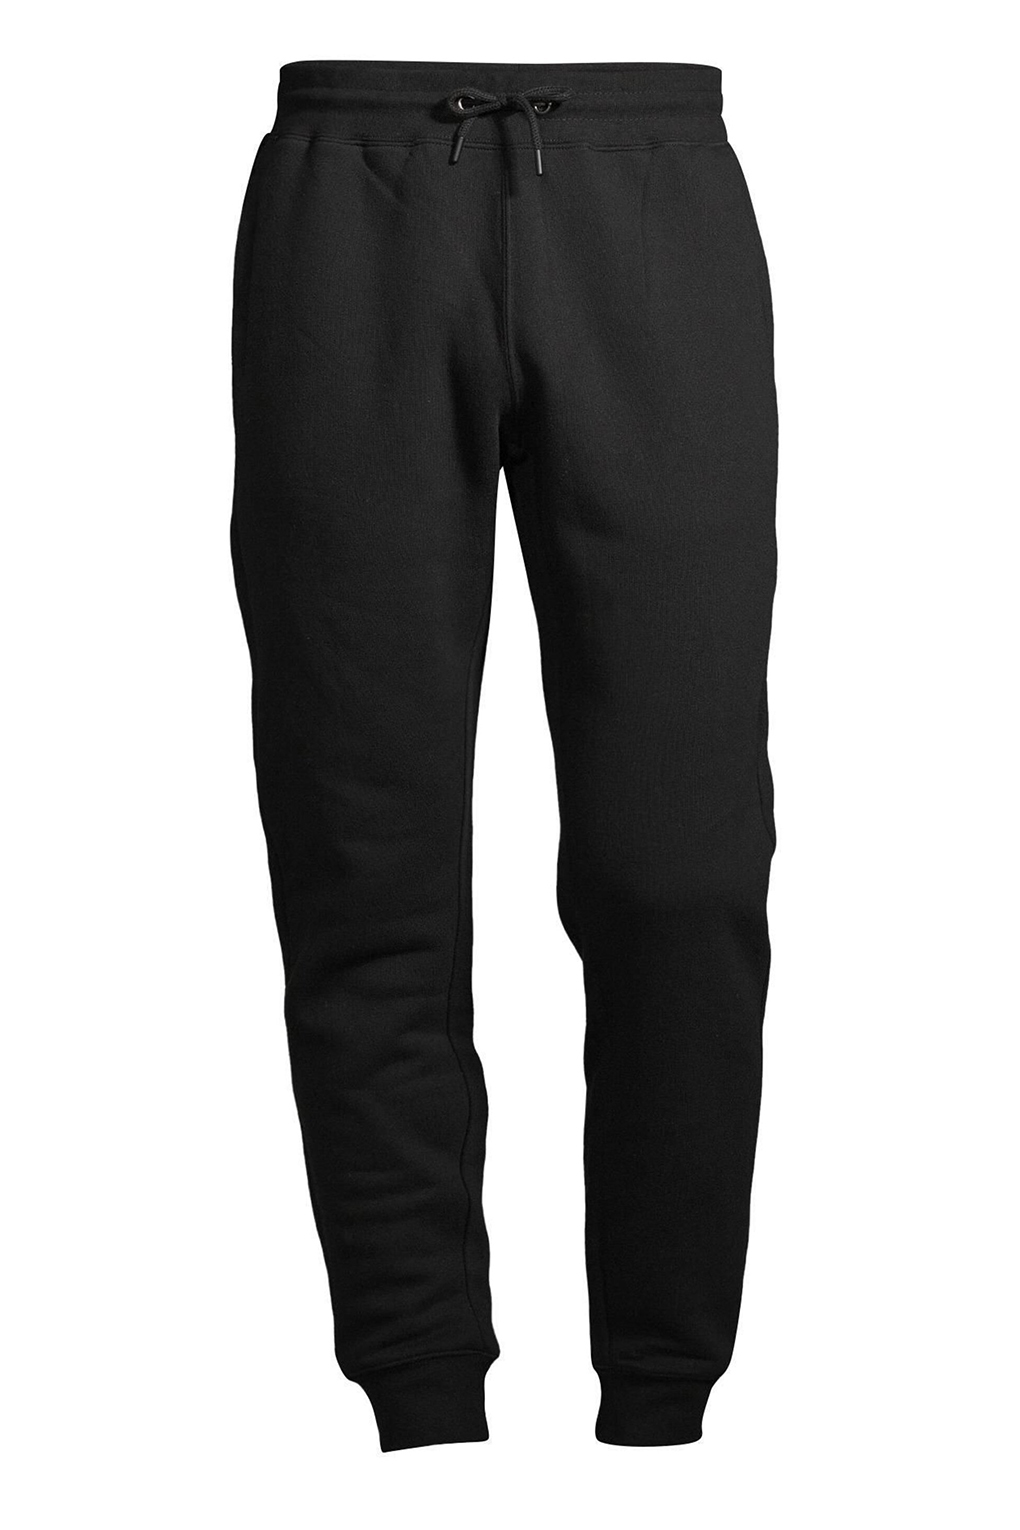 Спортивные брюки мужские Construe 2110 DEAN черные S